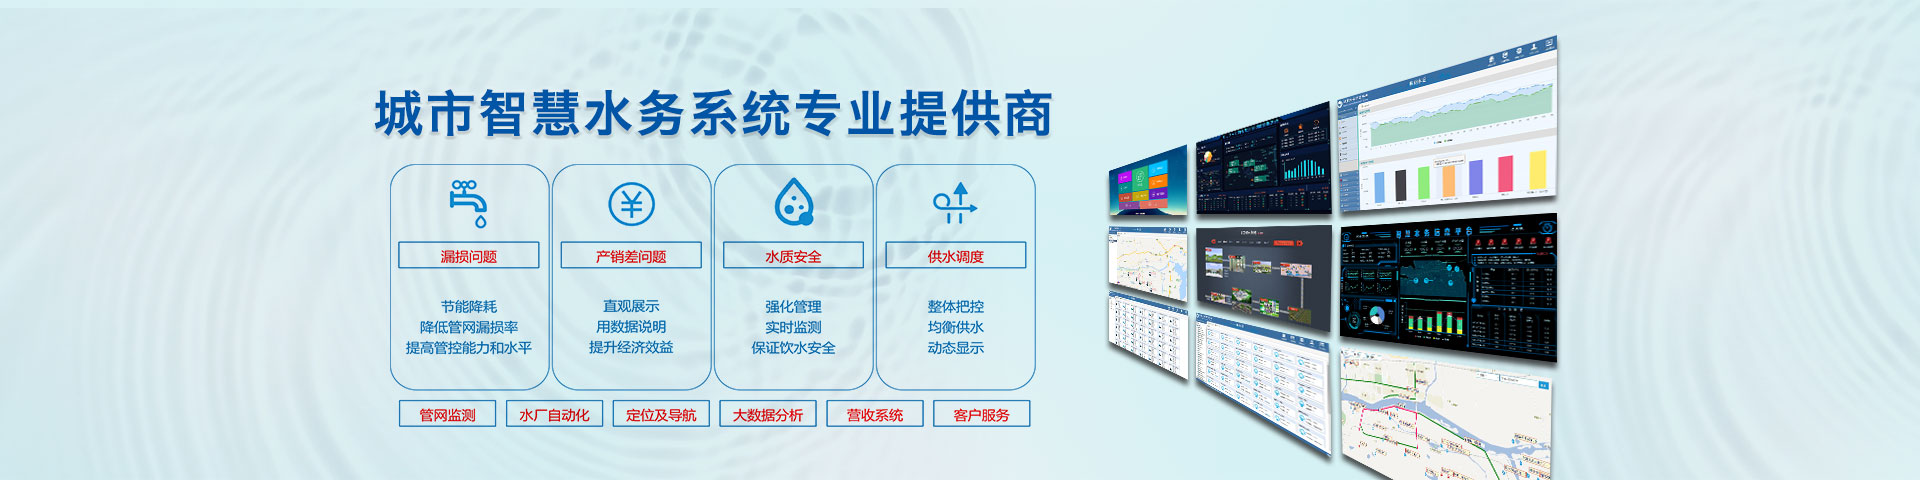 智慧水務系統 水務信息化平臺